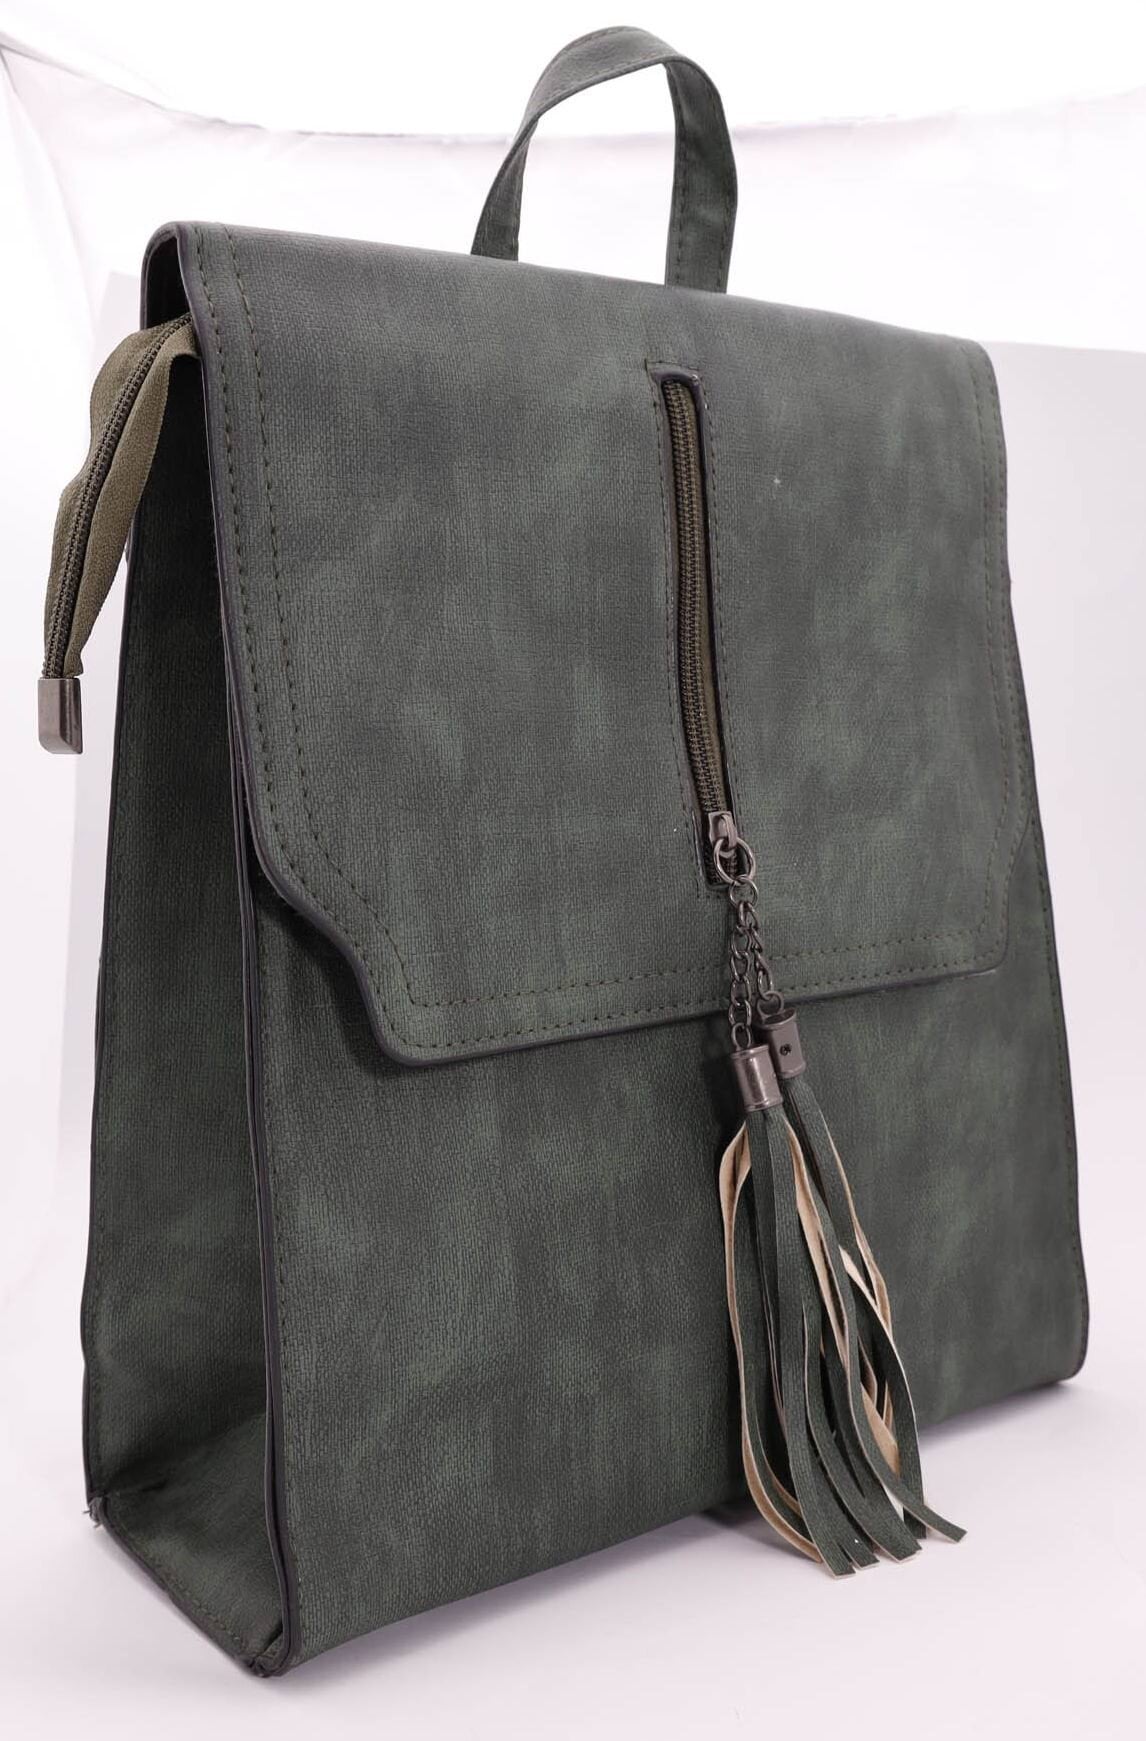 Рюкзак женский SKY эко-кожа, цыет: зеленый, голубой, 1 шт